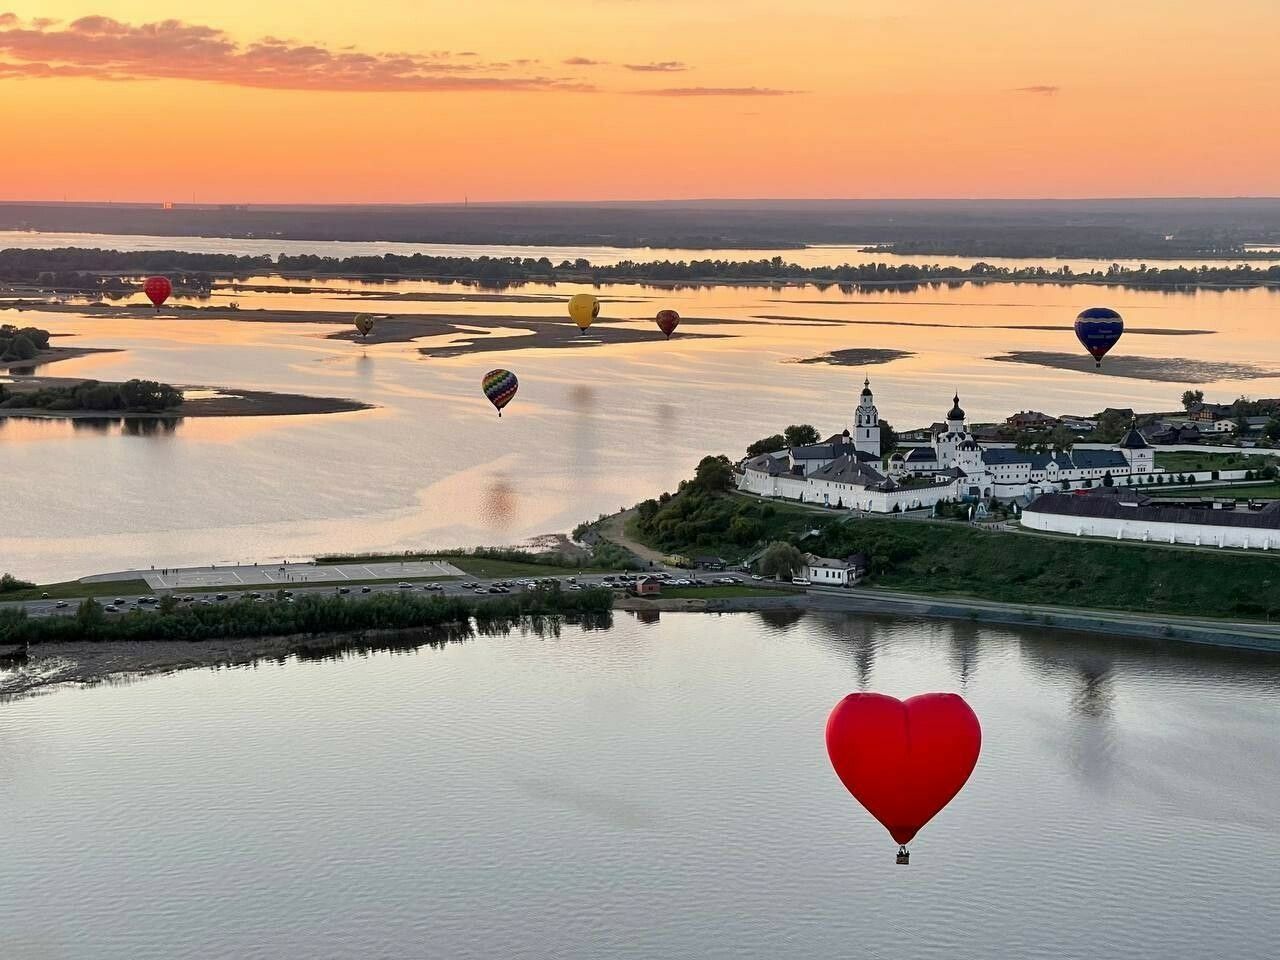 Рустам Минниханов опубликовал фото с воздушными шарами